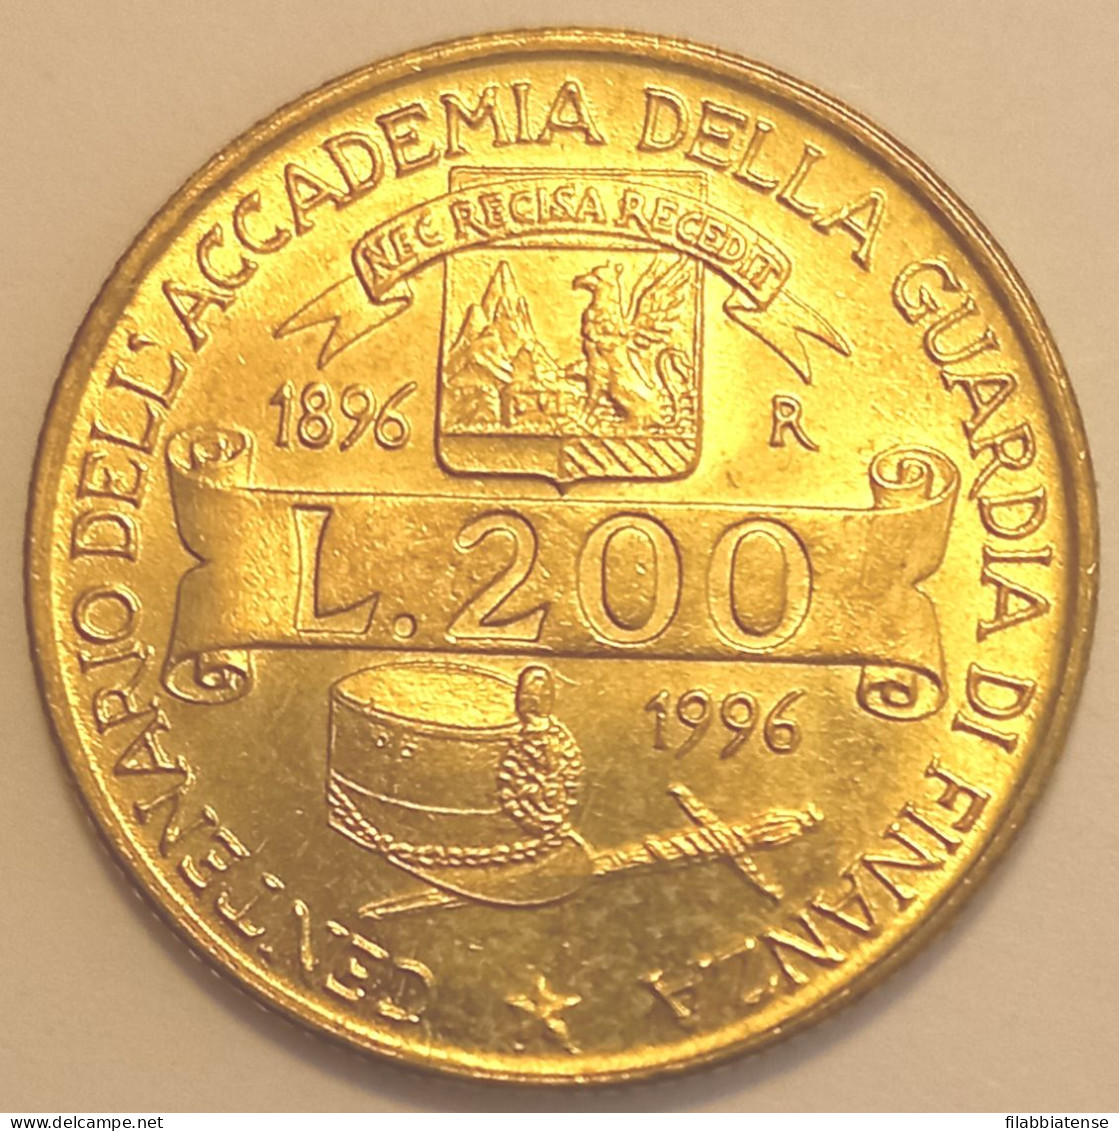 1996 - Italia 200 Lire Guardia Di Finanza    ------- - 200 Liras